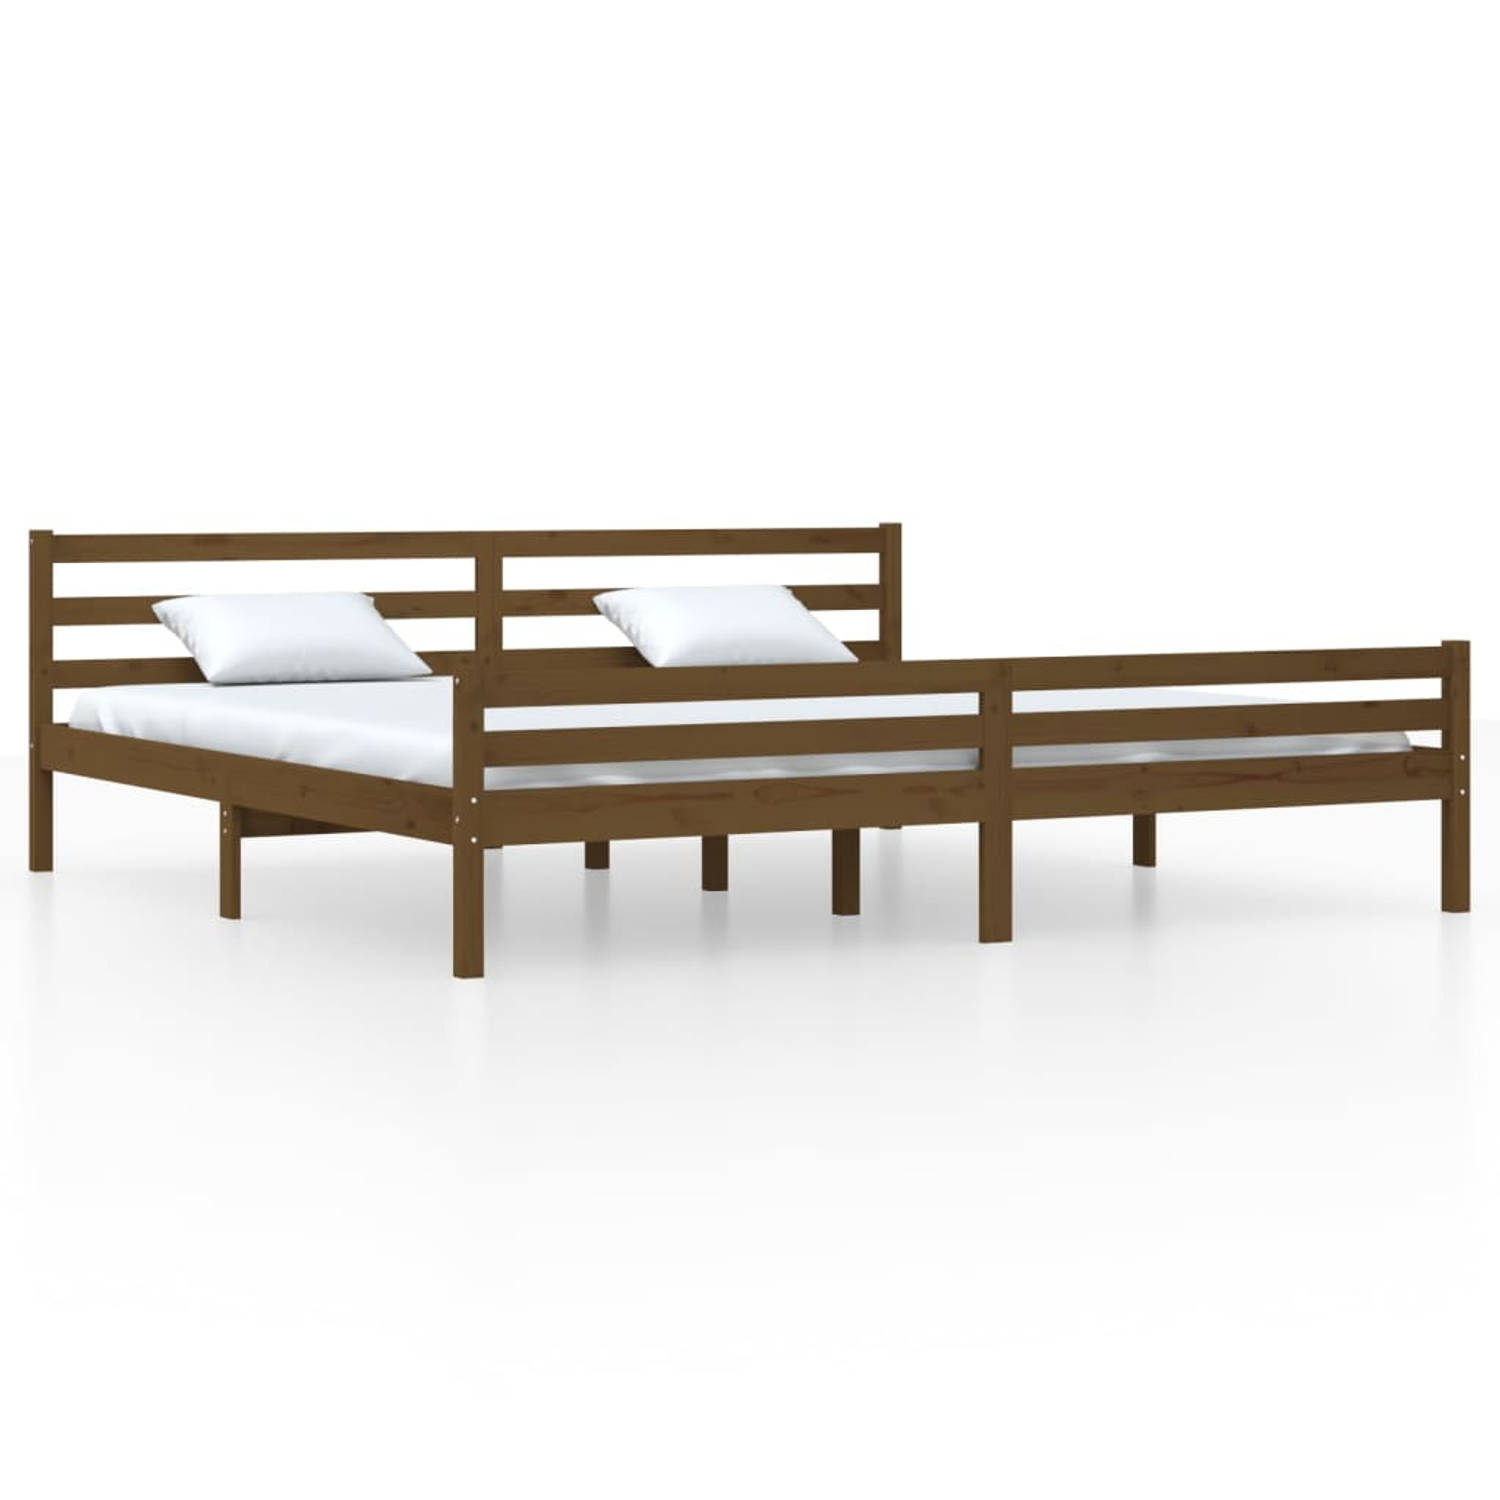 The Living Store Bedframe massief hout honingbruin 200x200 cm - Bedframe - Bedframes - Bed - Bedbodem - Ledikant - Bed Frame - Massief Houten Bedframe - Slaapmeubel - Tweepersoonsb